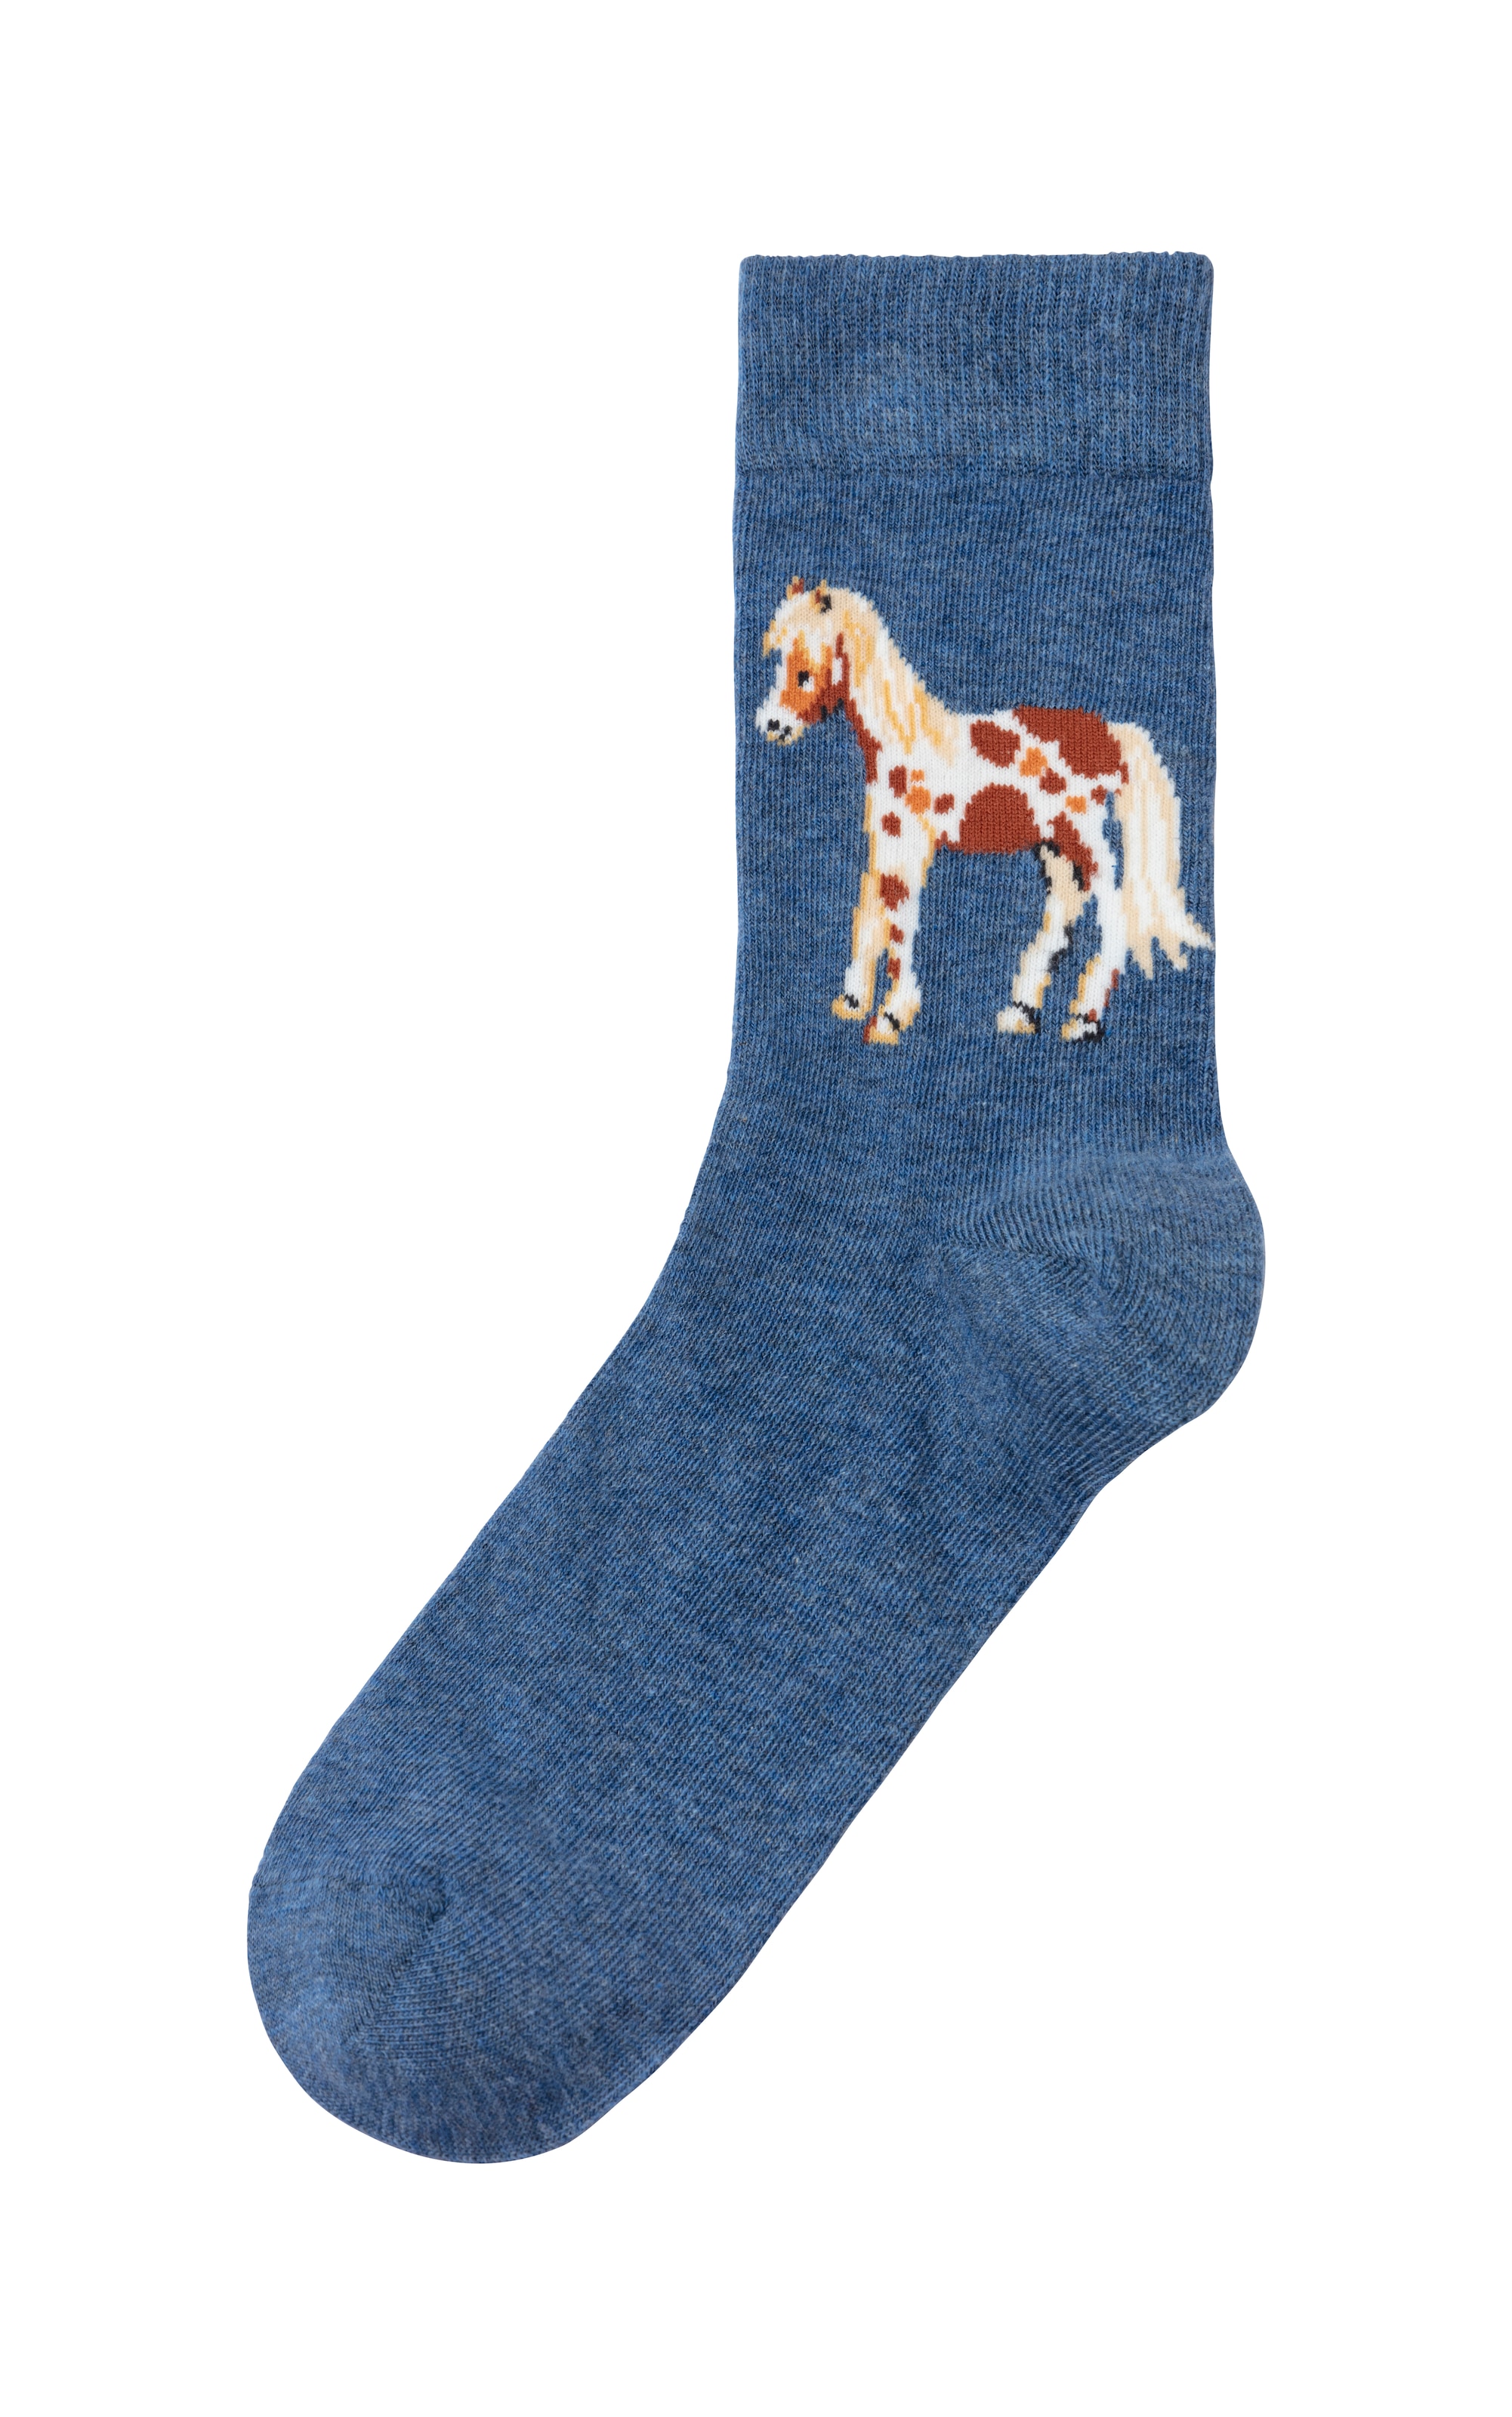 H.I.S Socken, (5 Paar), Mit unterschiedlichen Pferdemotiven